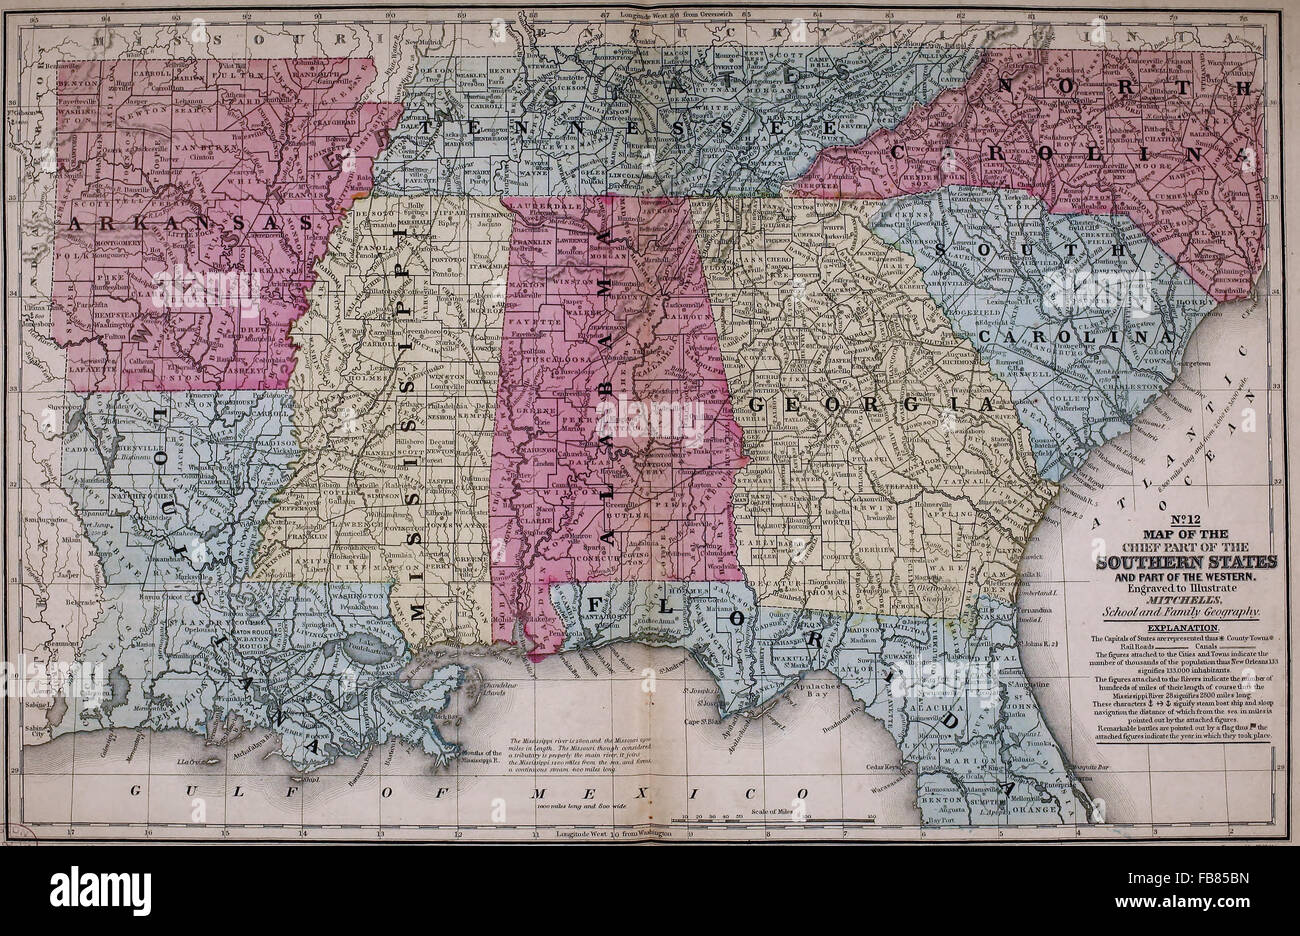 Carte des états du Sud - États-Unis Amérique latine - circa 1861 Banque D'Images